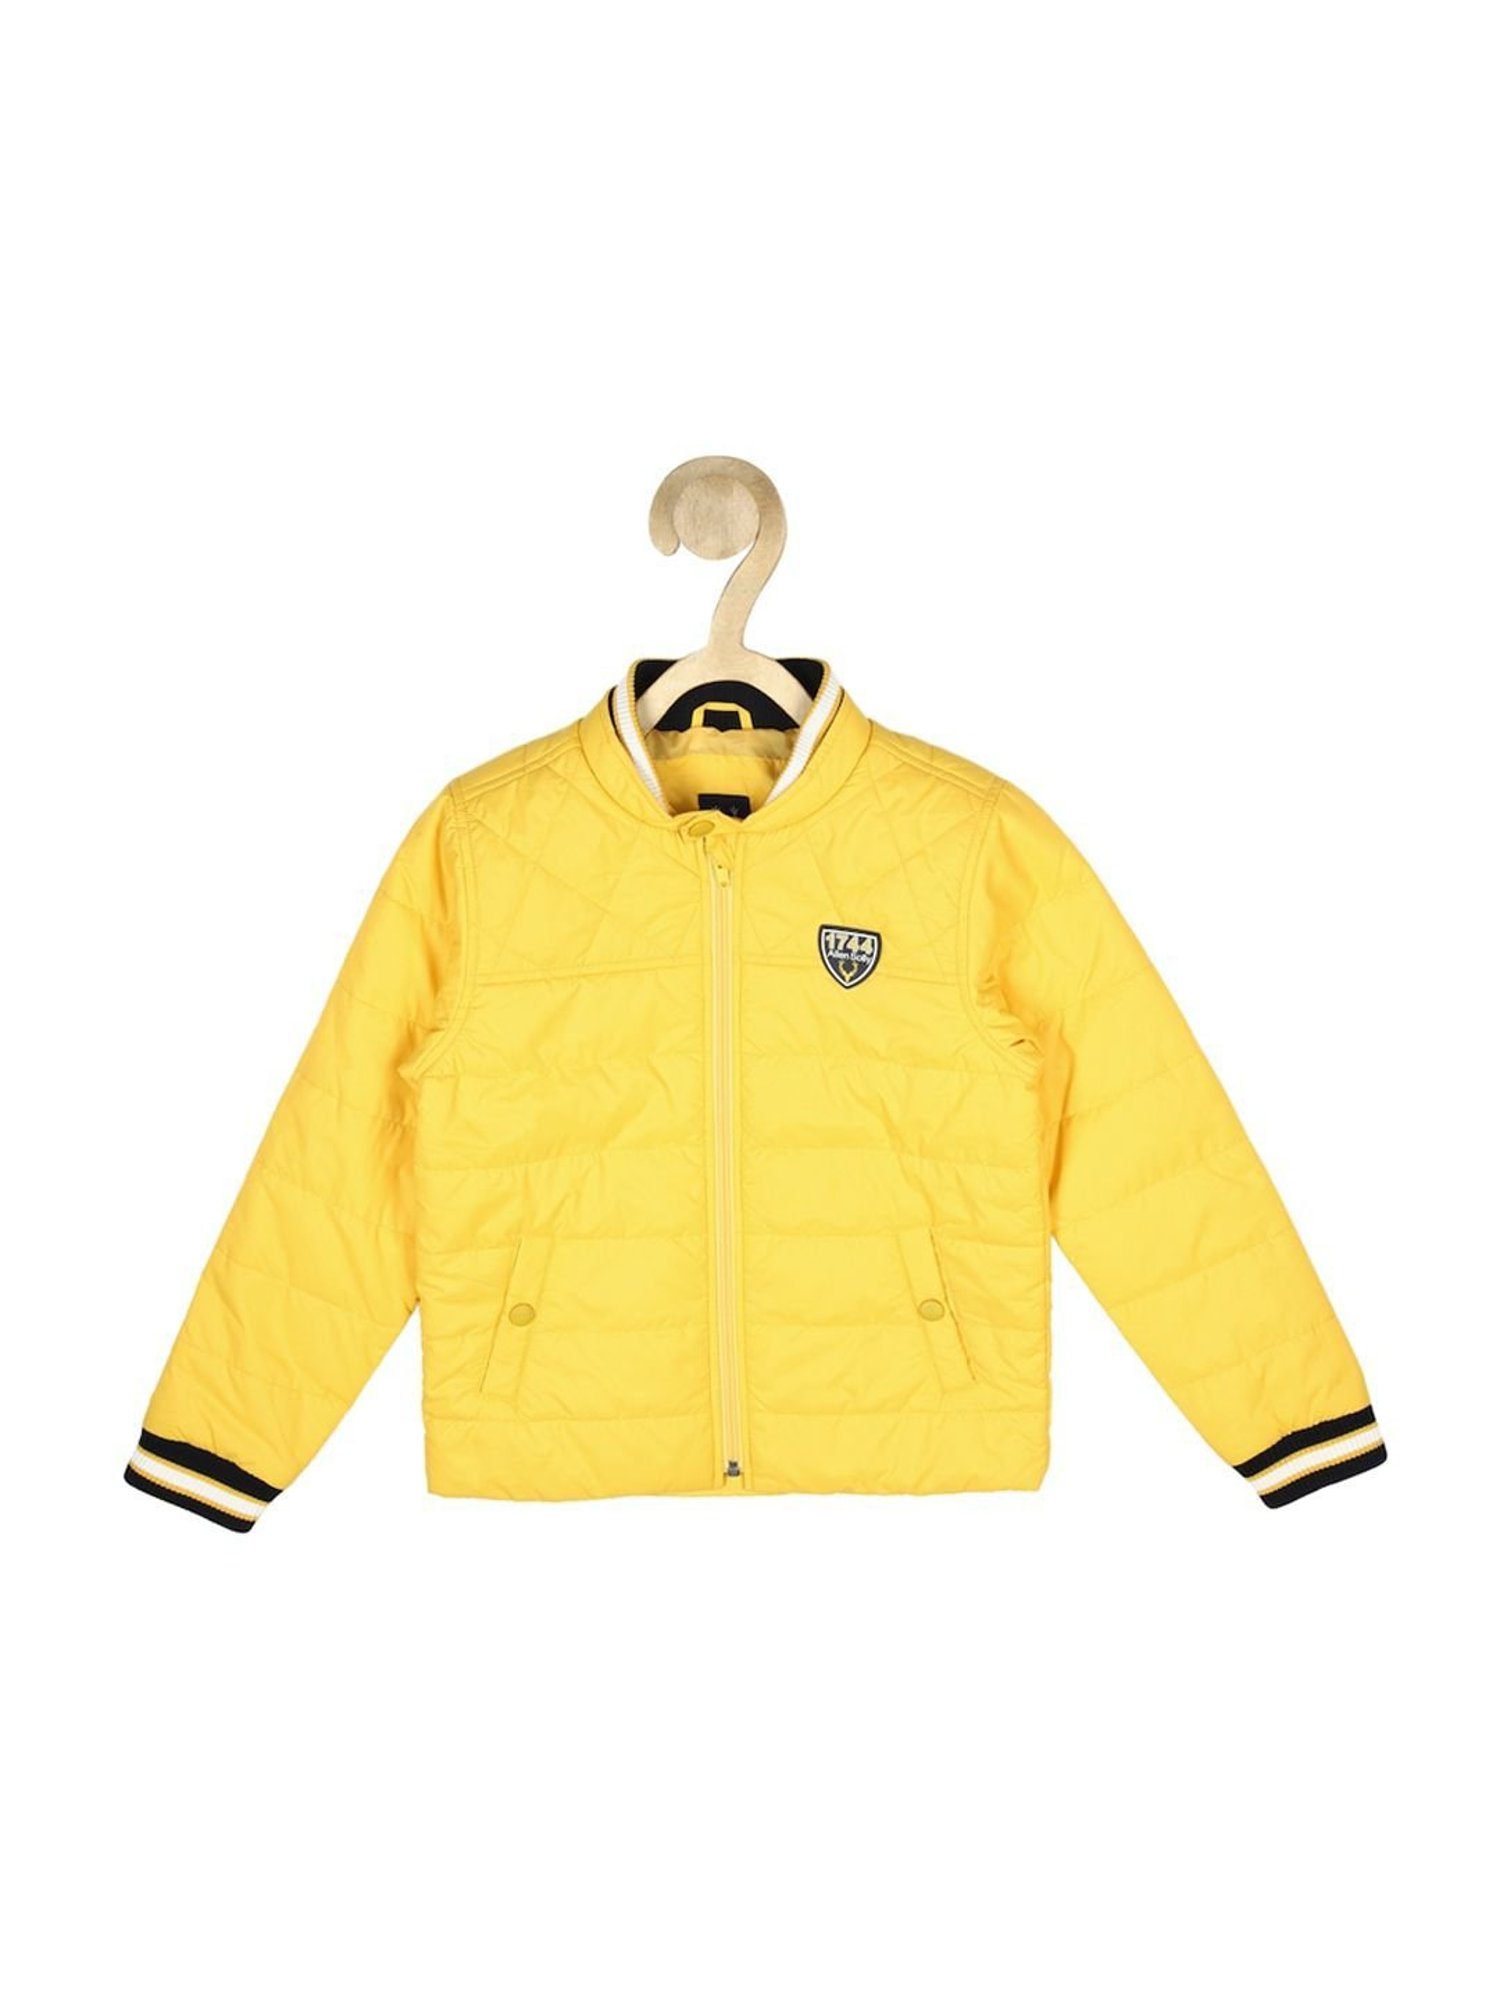 Buy Boys Navy Textured Regular Fit Jacket Online - 662478 | Allen Solly